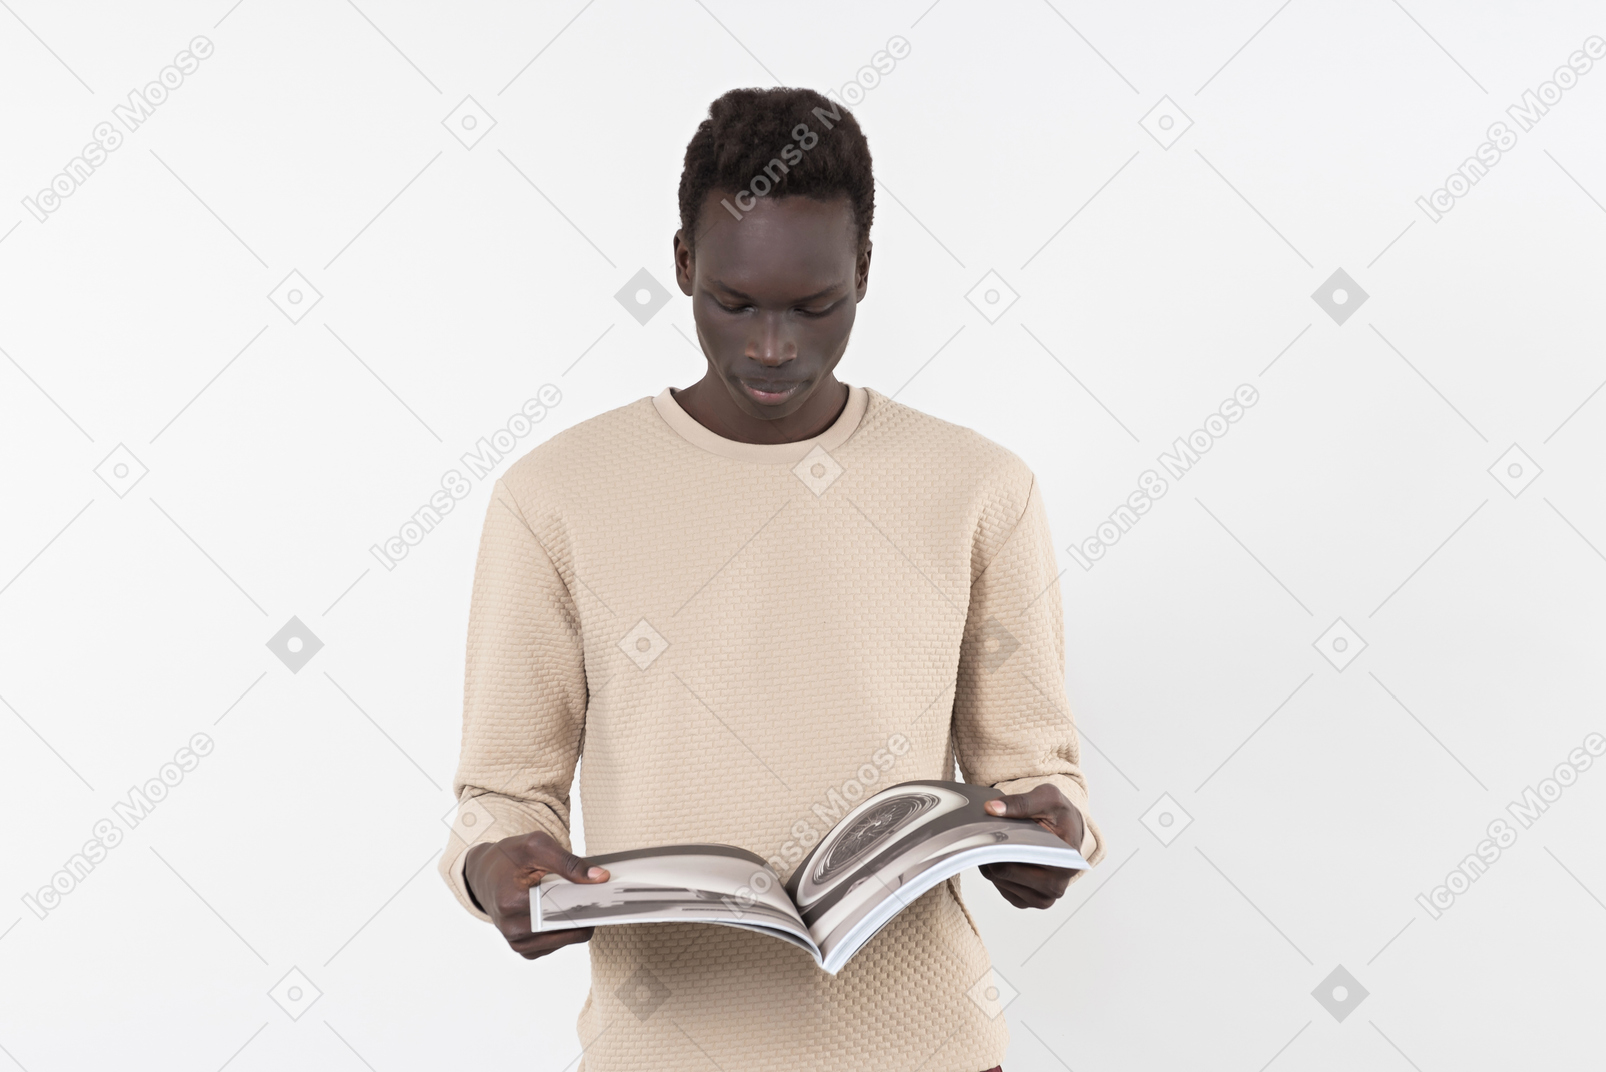 회색 스웨터를 입은 젊은 흑인 남자가 손에 책을 들고 흰색 배경에 홀로 서 있다